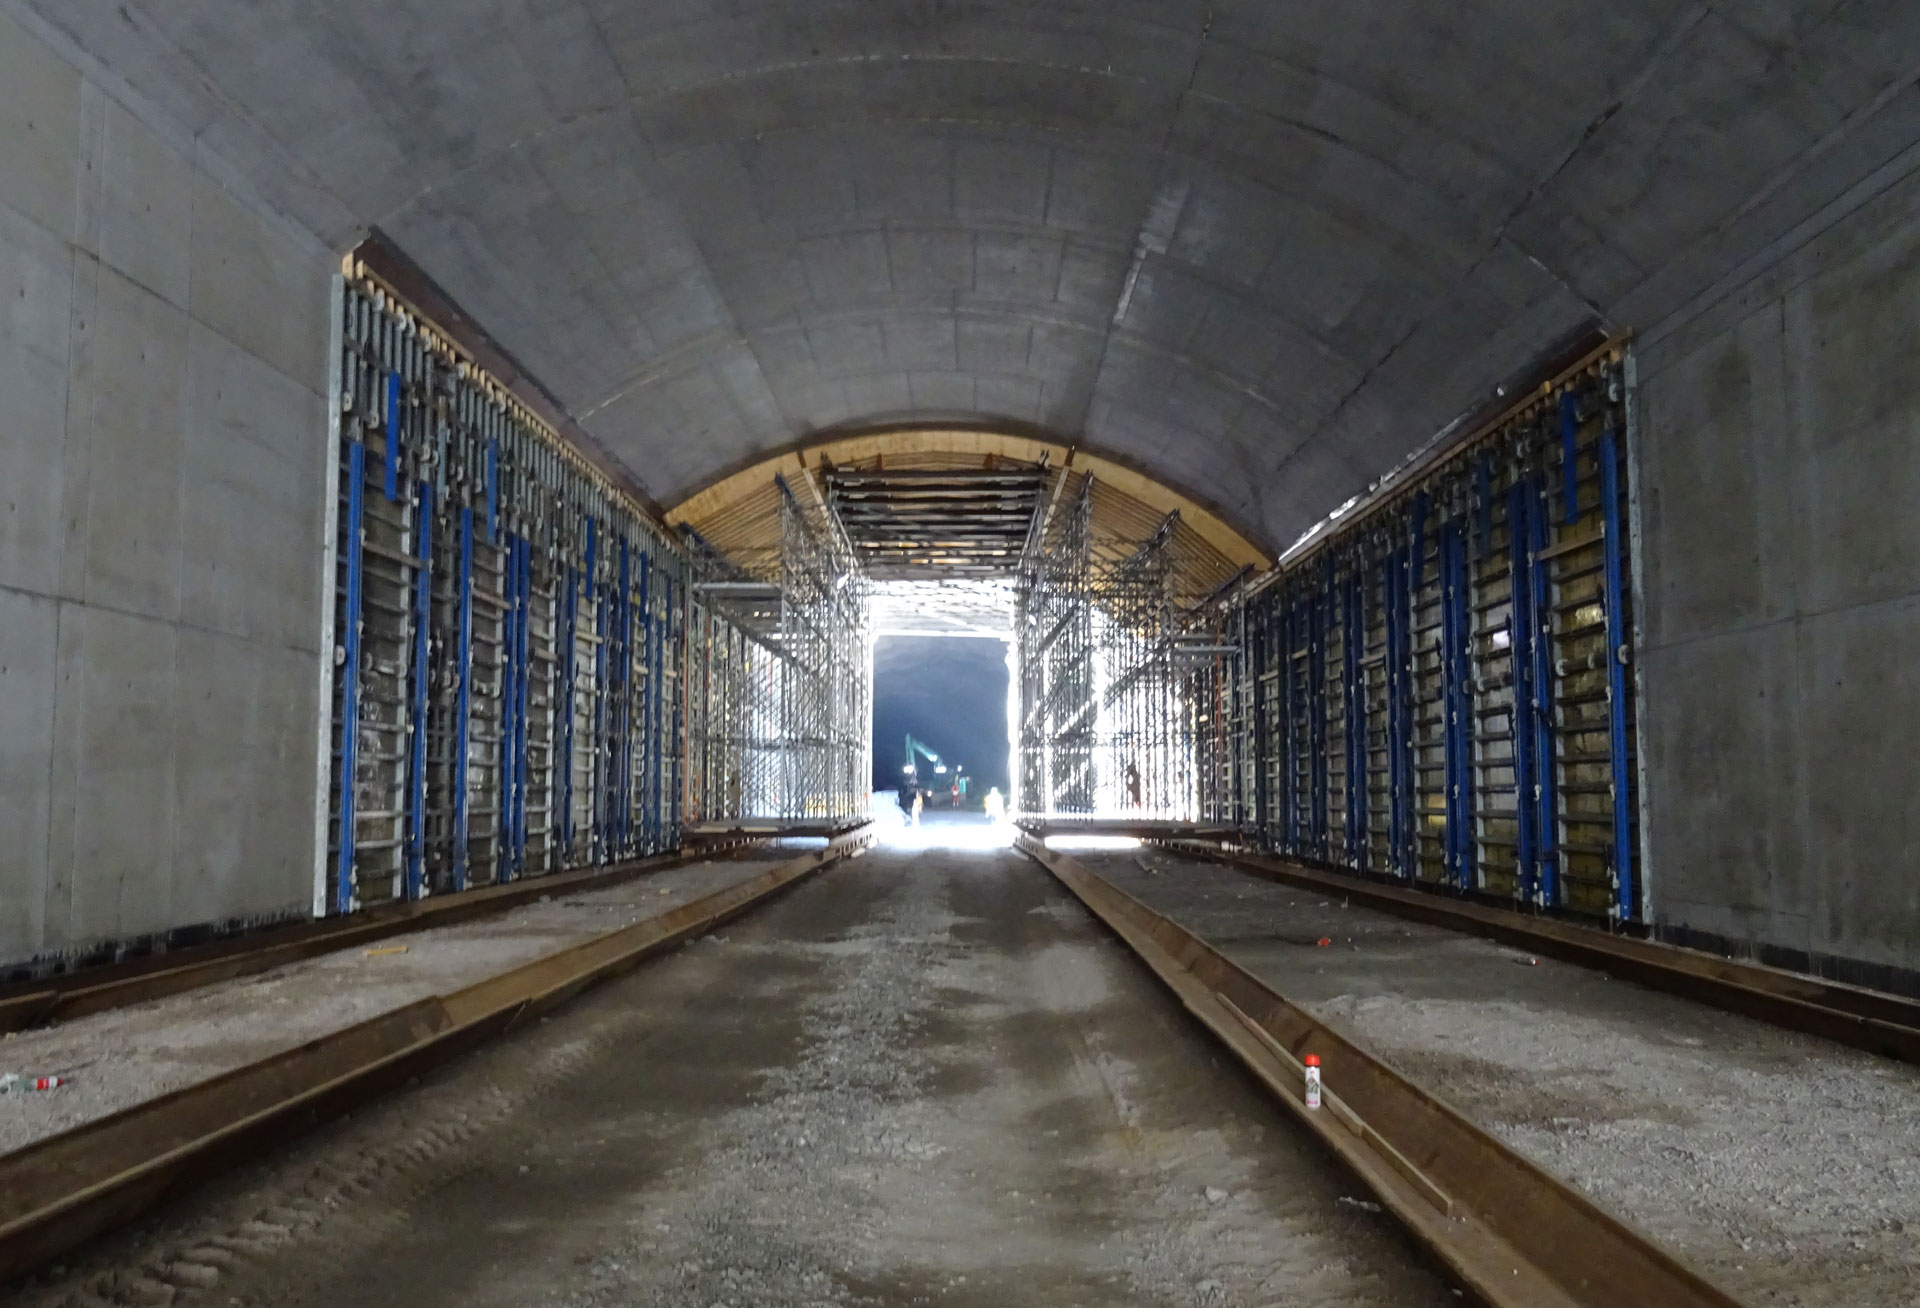 Liipolan betonirakenteinen tunneli on raudoitettu ja ruiskubetonoitu, kuten kalliotunneli. Kuva: Antti Rytkönen / Väylä